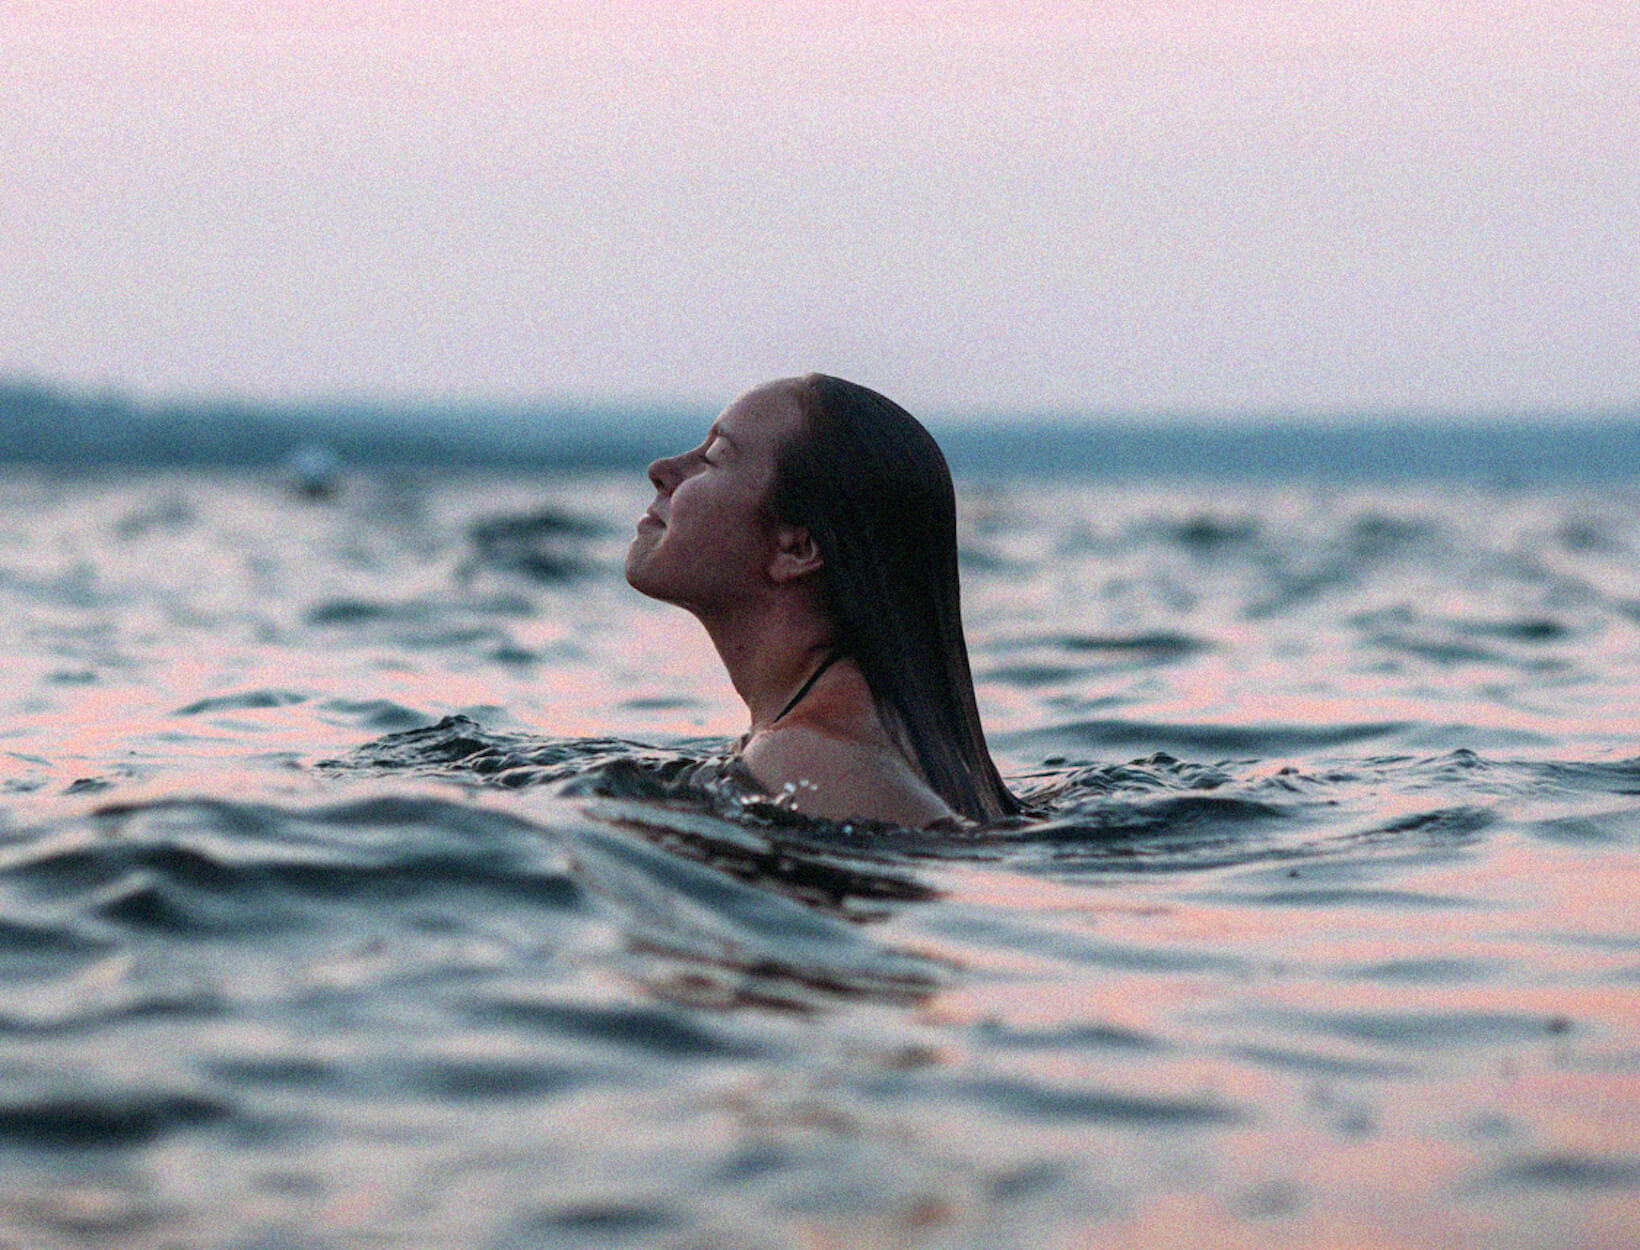 woman swims in the sea